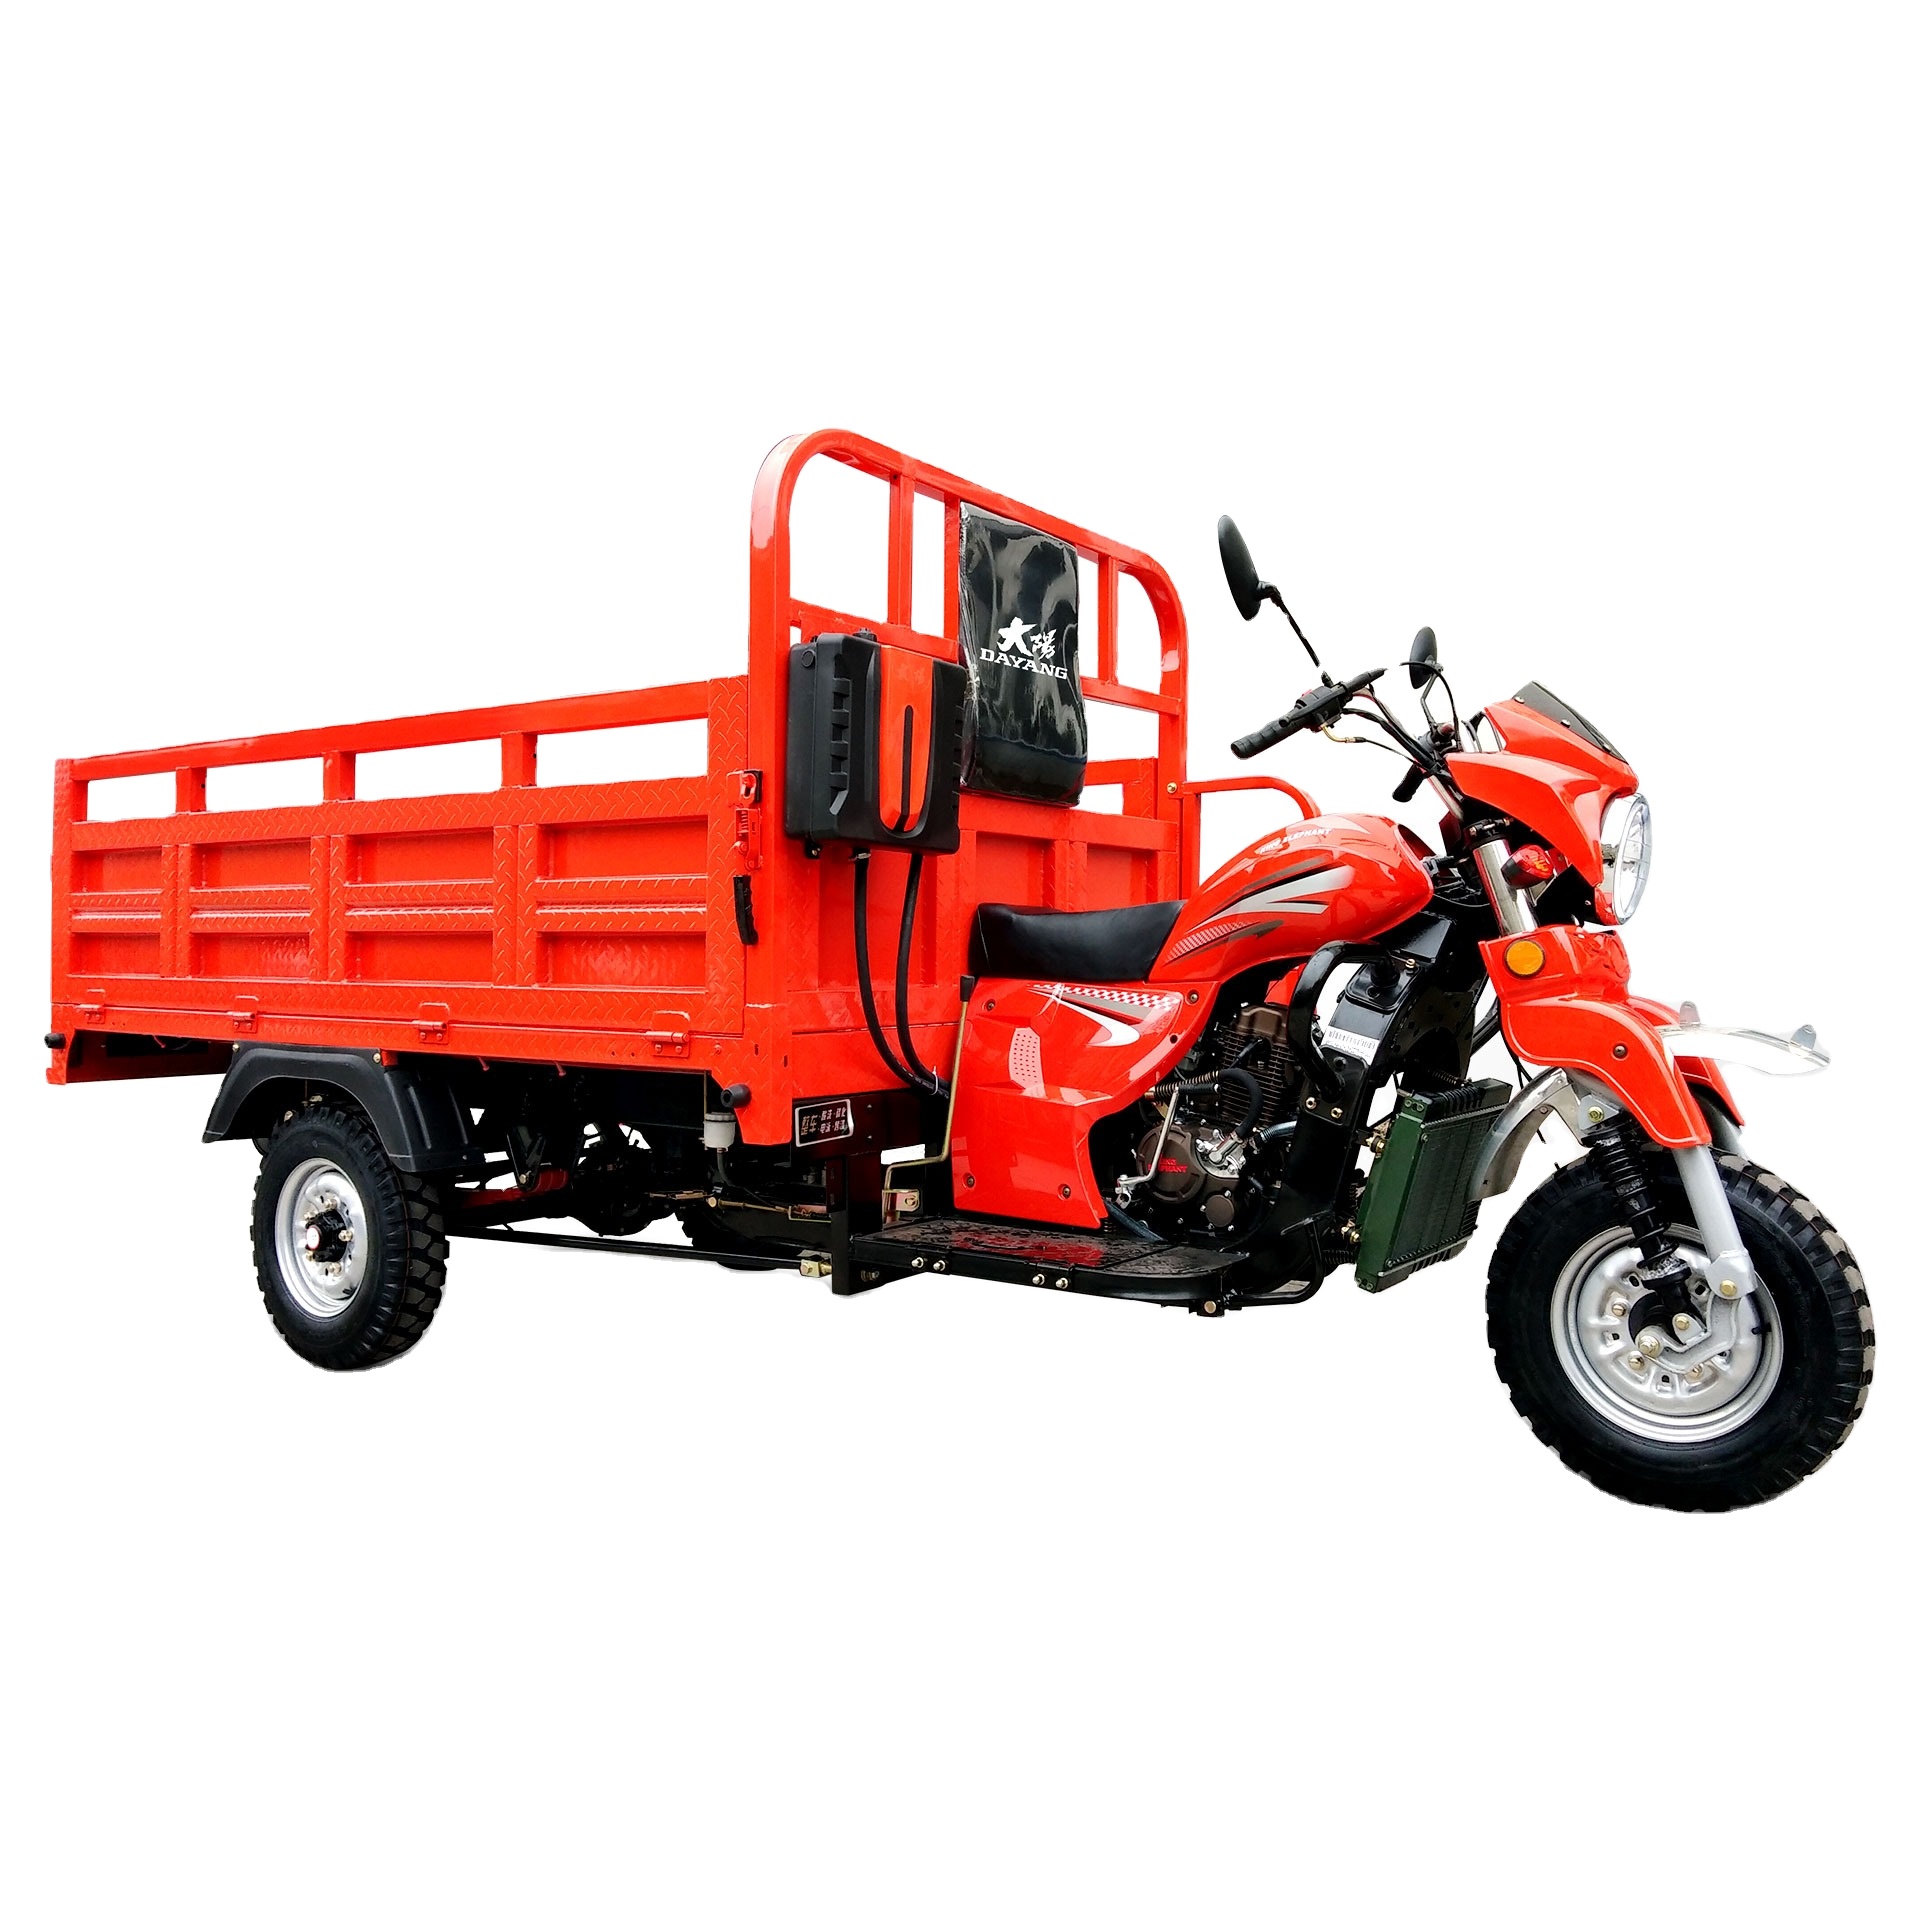 DAYANG elderly disabled custom hot selling three wheel motorcycle model van Cargo Tricycle 3- Wheeled Motorcycle Cargo Tricycle